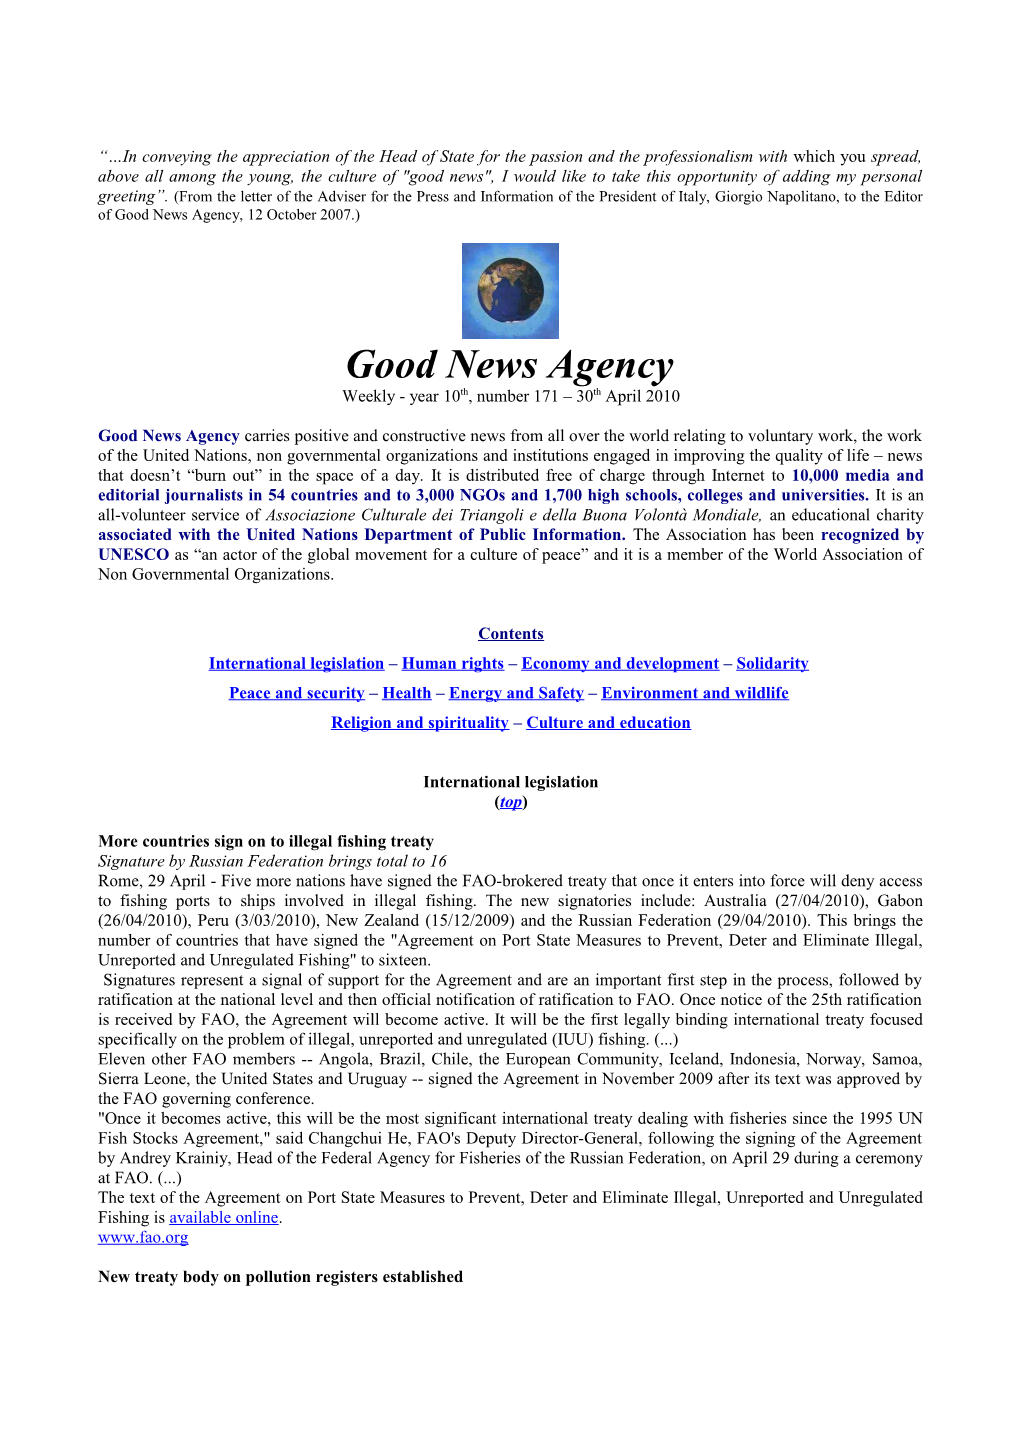 Good News Agency - Year 10Th, No.161 - 30 April 2010